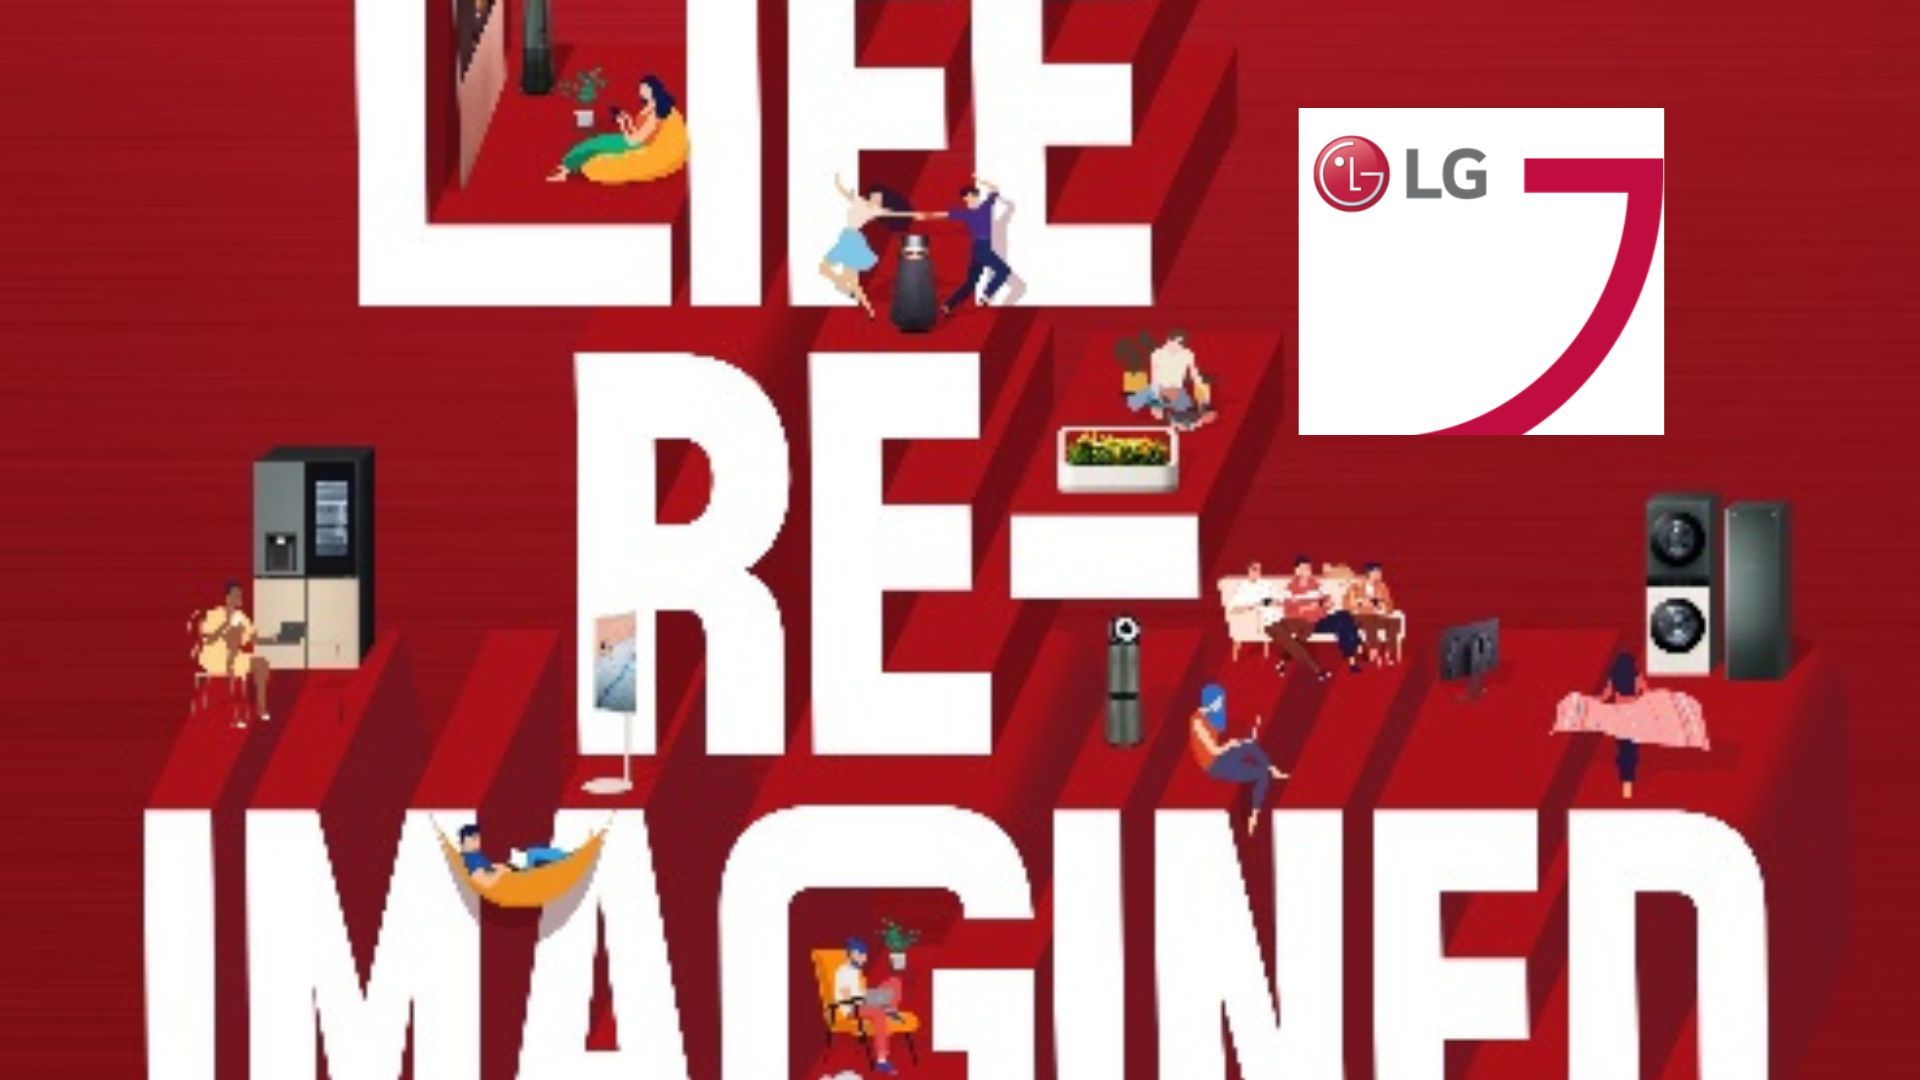 LG dévoilera ses innovations de pointe l’IFA 2022